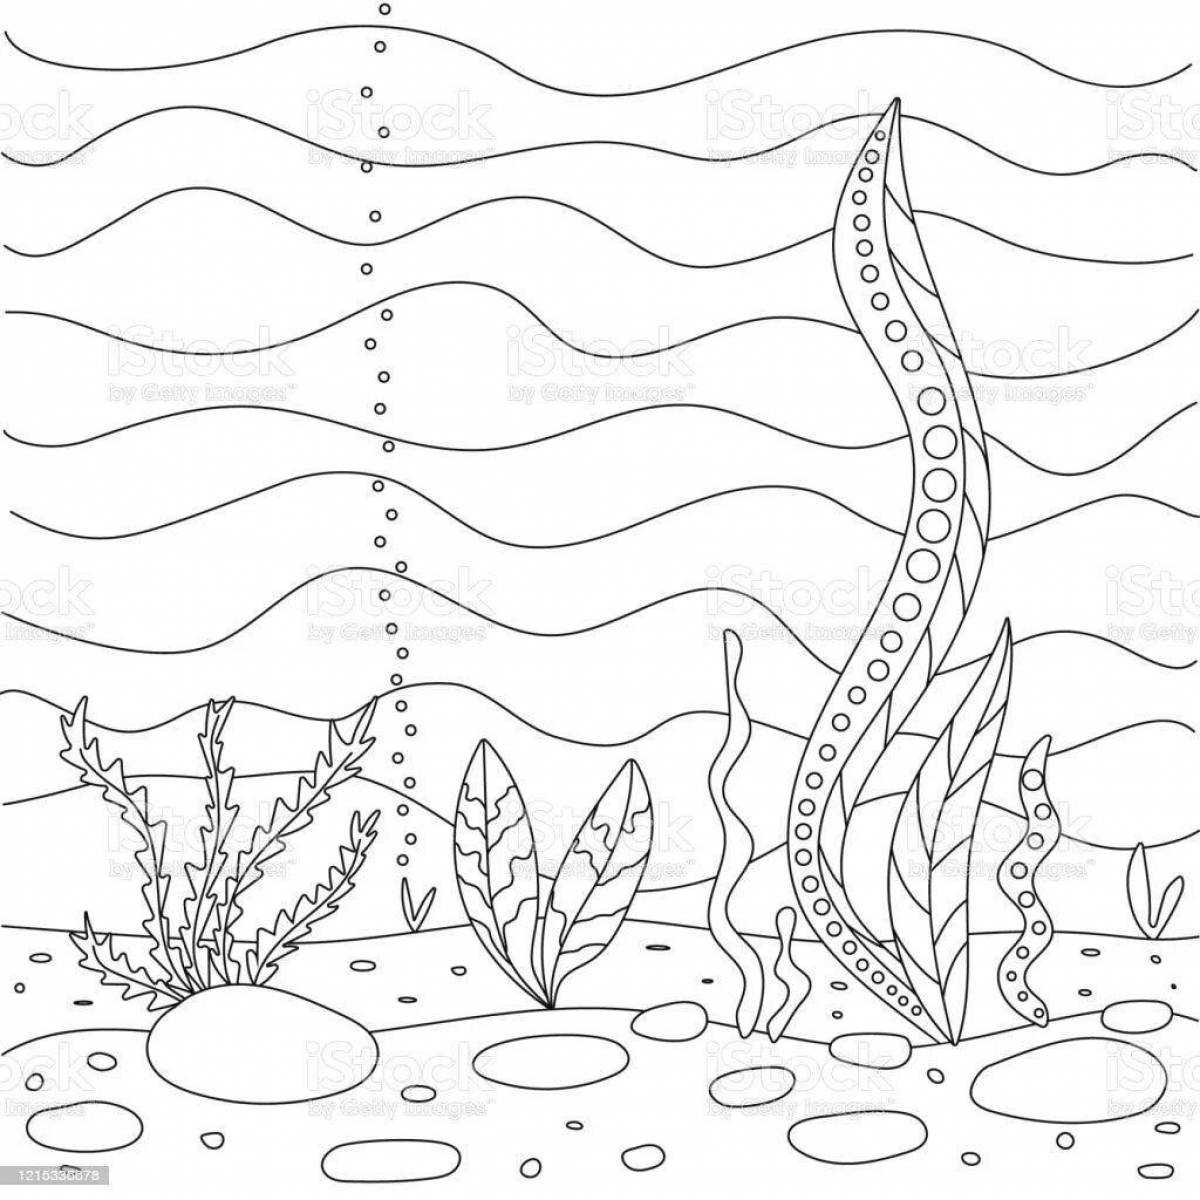 Раскраска веселая рыбка с водорослями